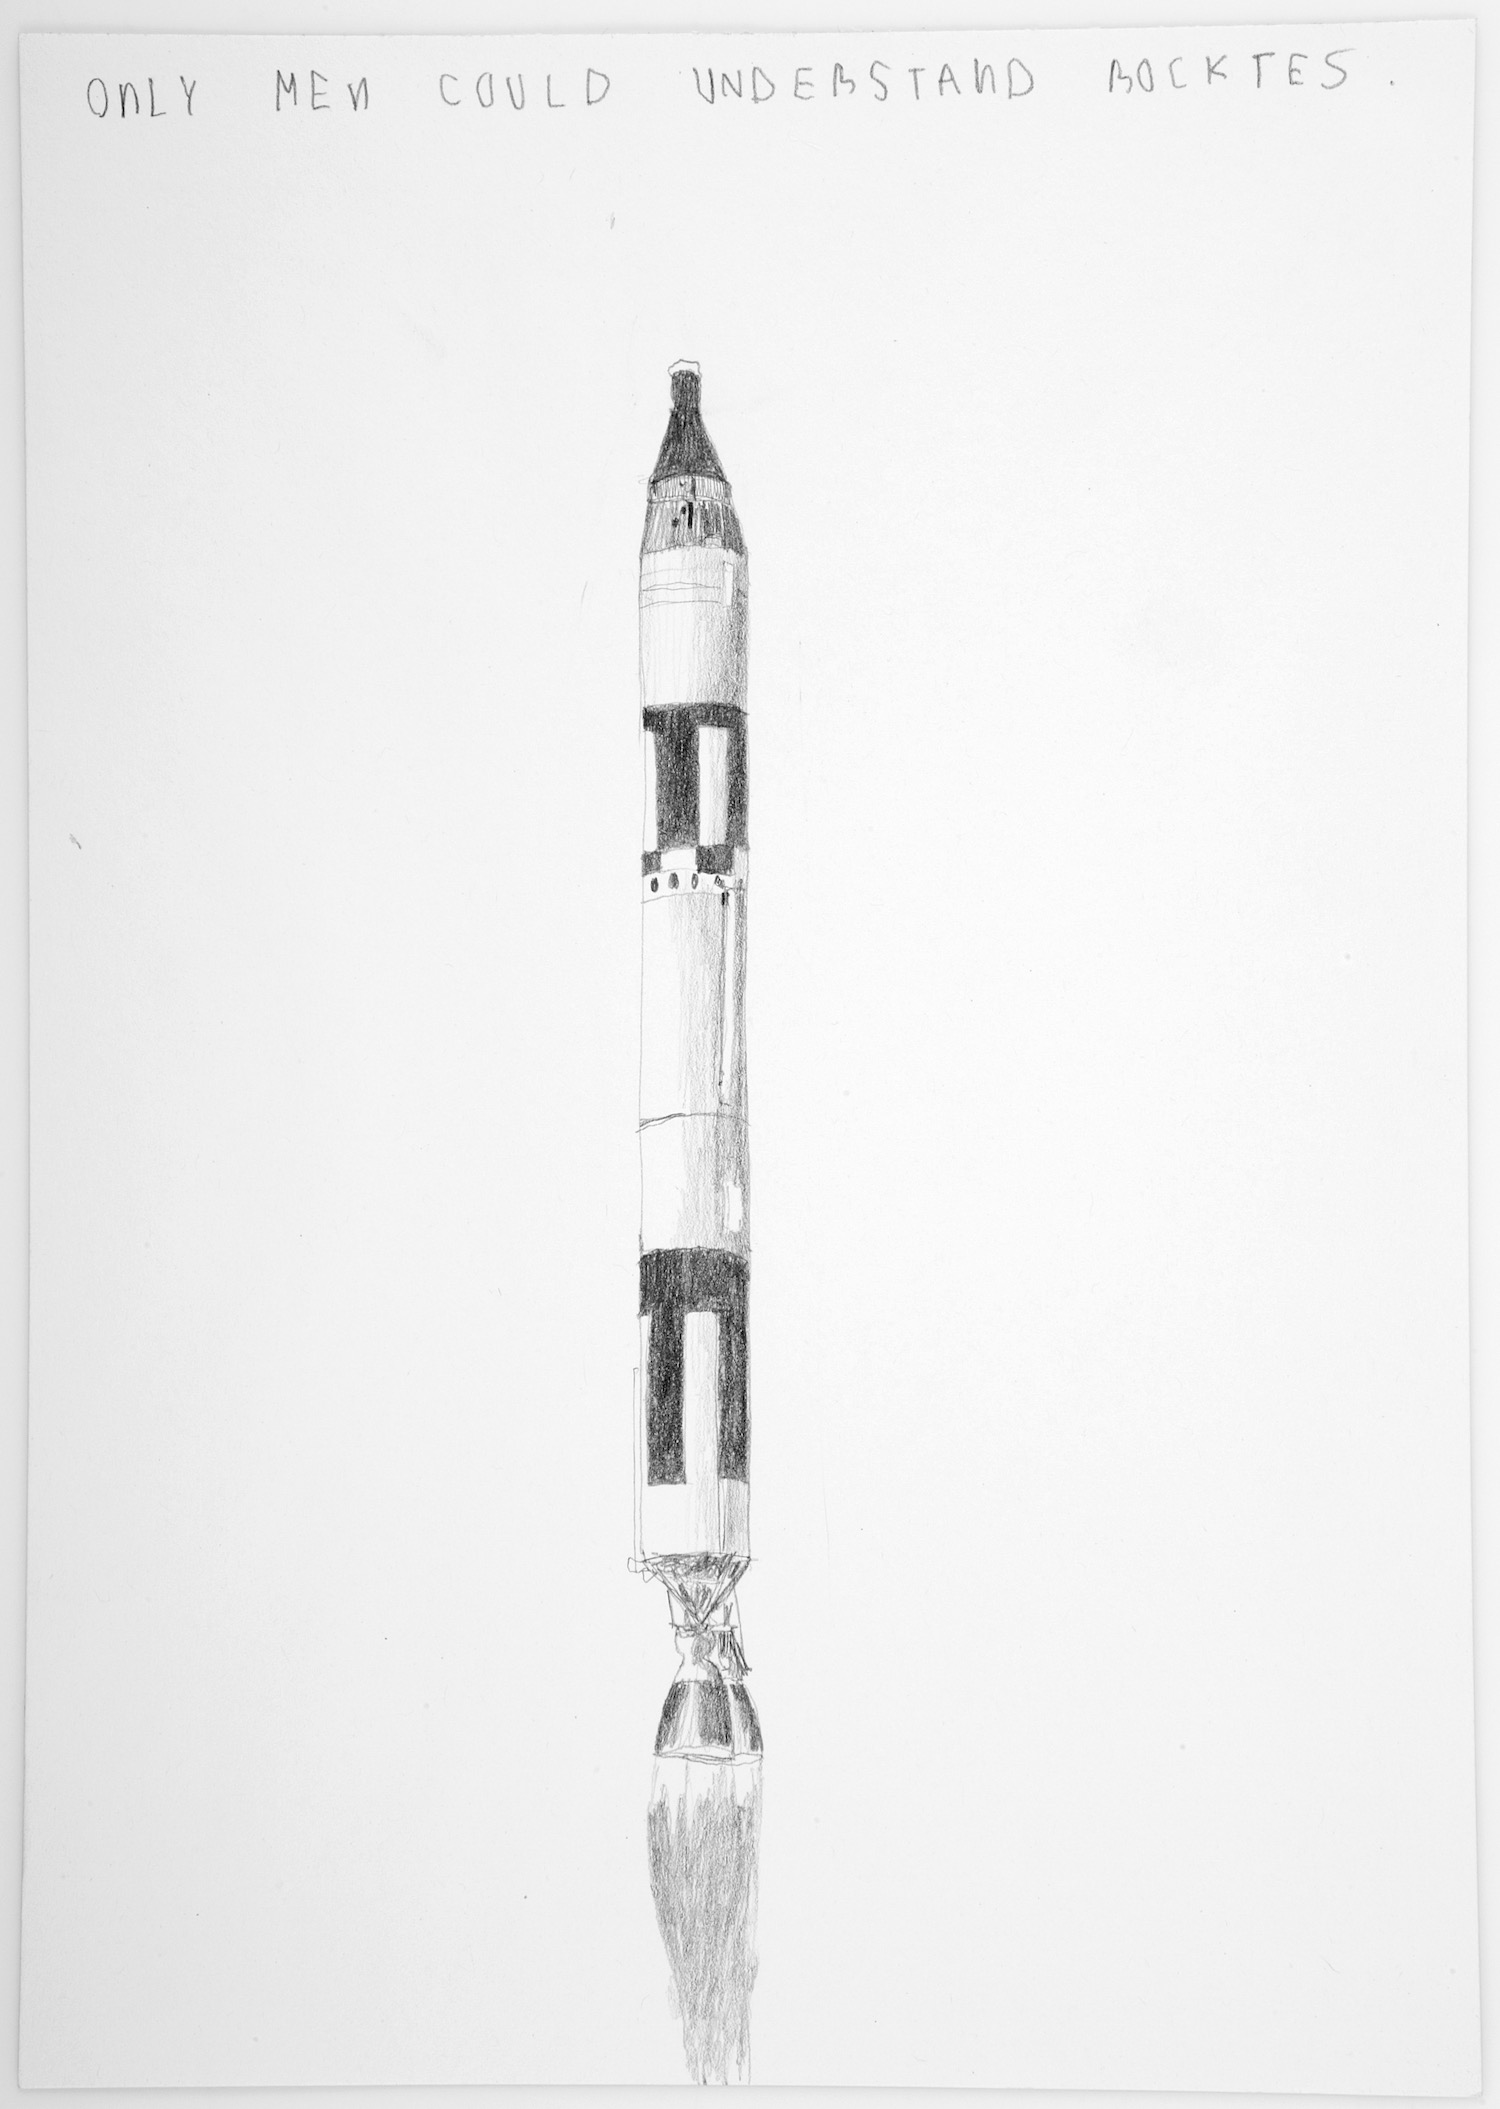   Solo los hombres pueden entender cohetes   Grafito sobre papel&nbsp; &nbsp; &nbsp; &nbsp; &nbsp; &nbsp; 26 x 20 cm.&nbsp;2002    